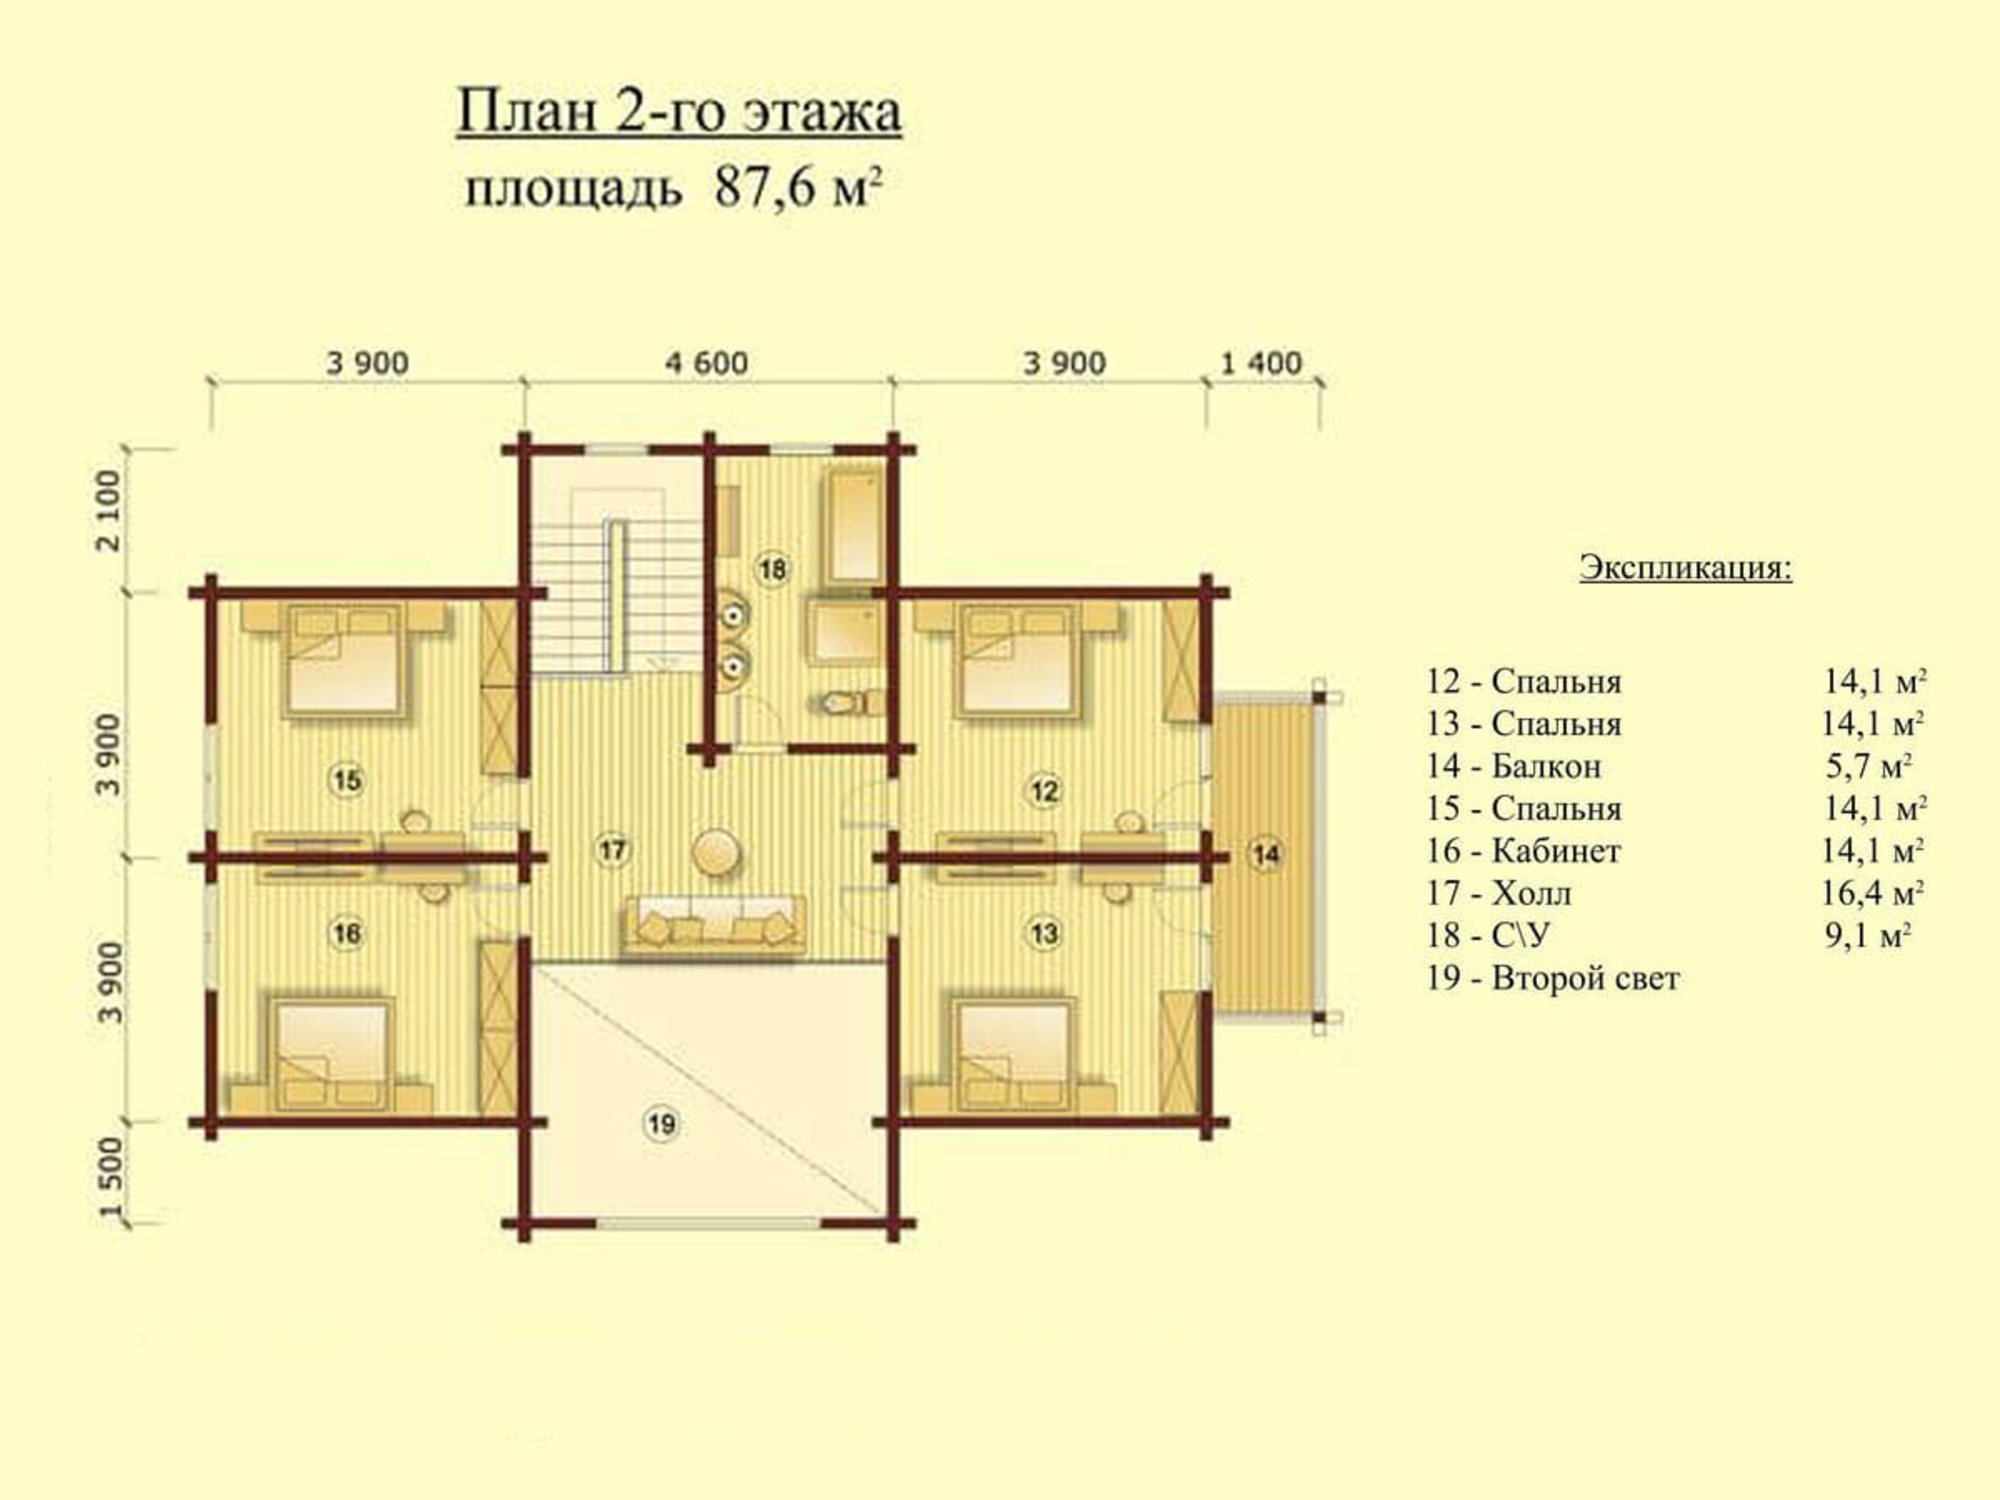 Планировка второго этажа до 87,6 квадратных метров